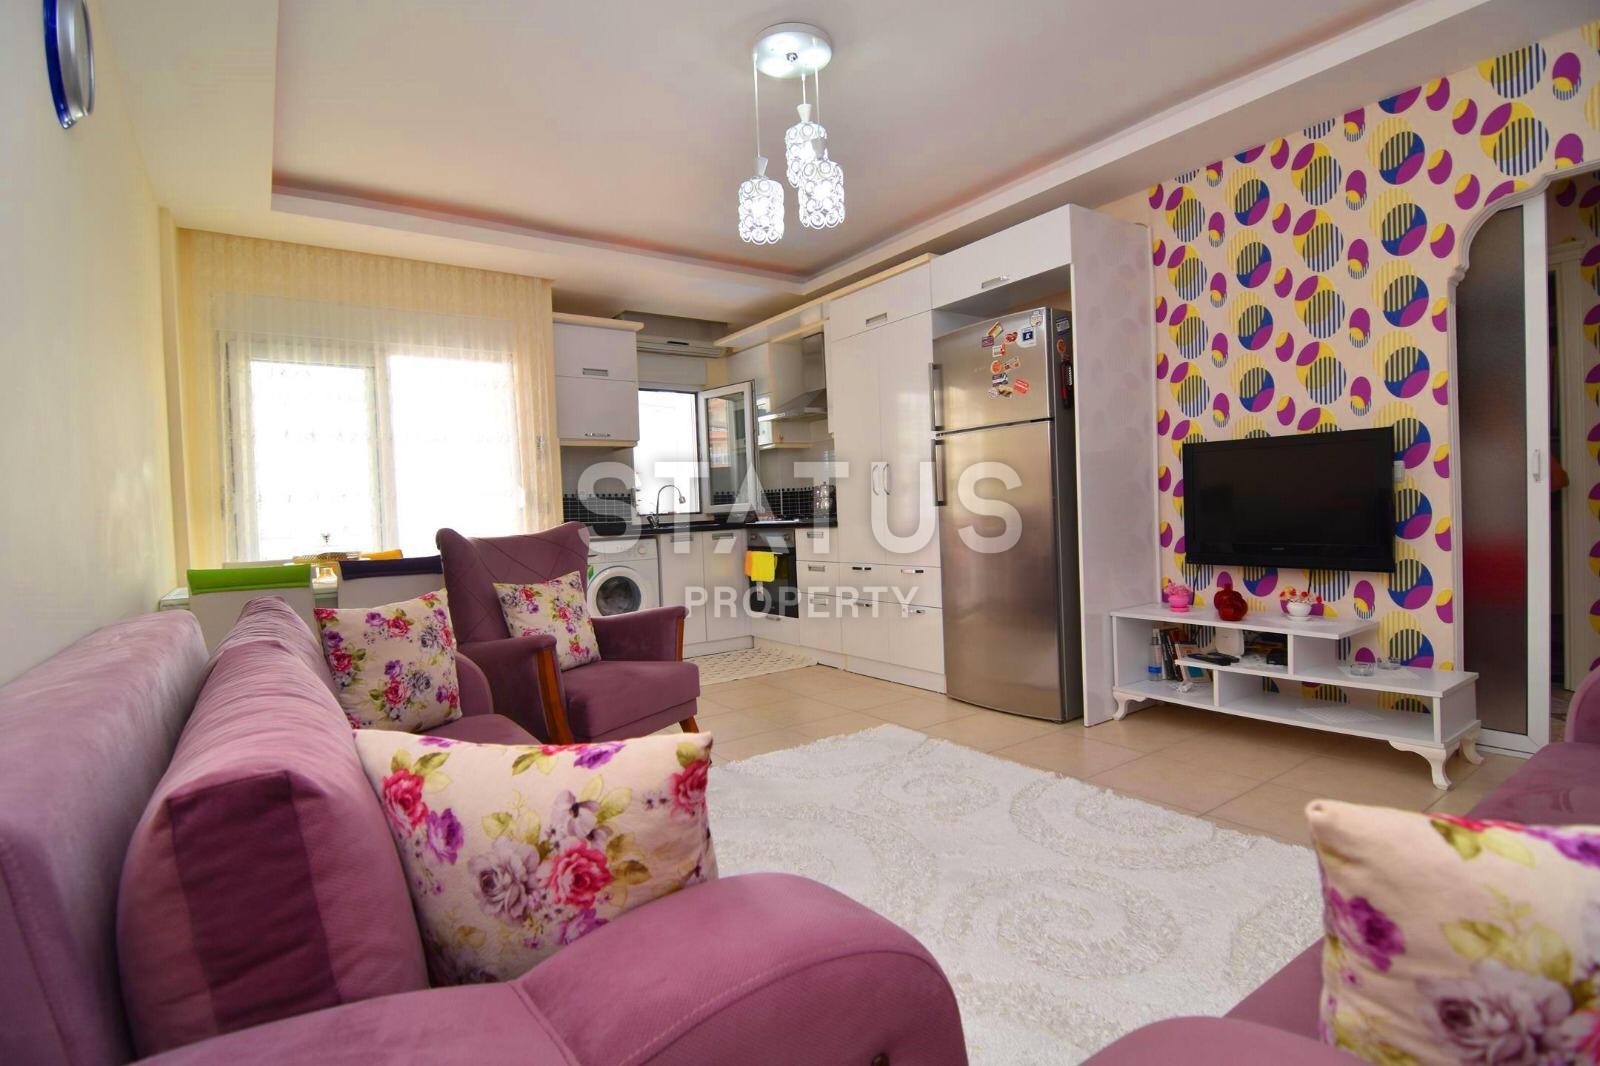 Двухкомнатная квартира в Махмутларе с мебелью и бытовой техникой, 65 кв. м. фото 2